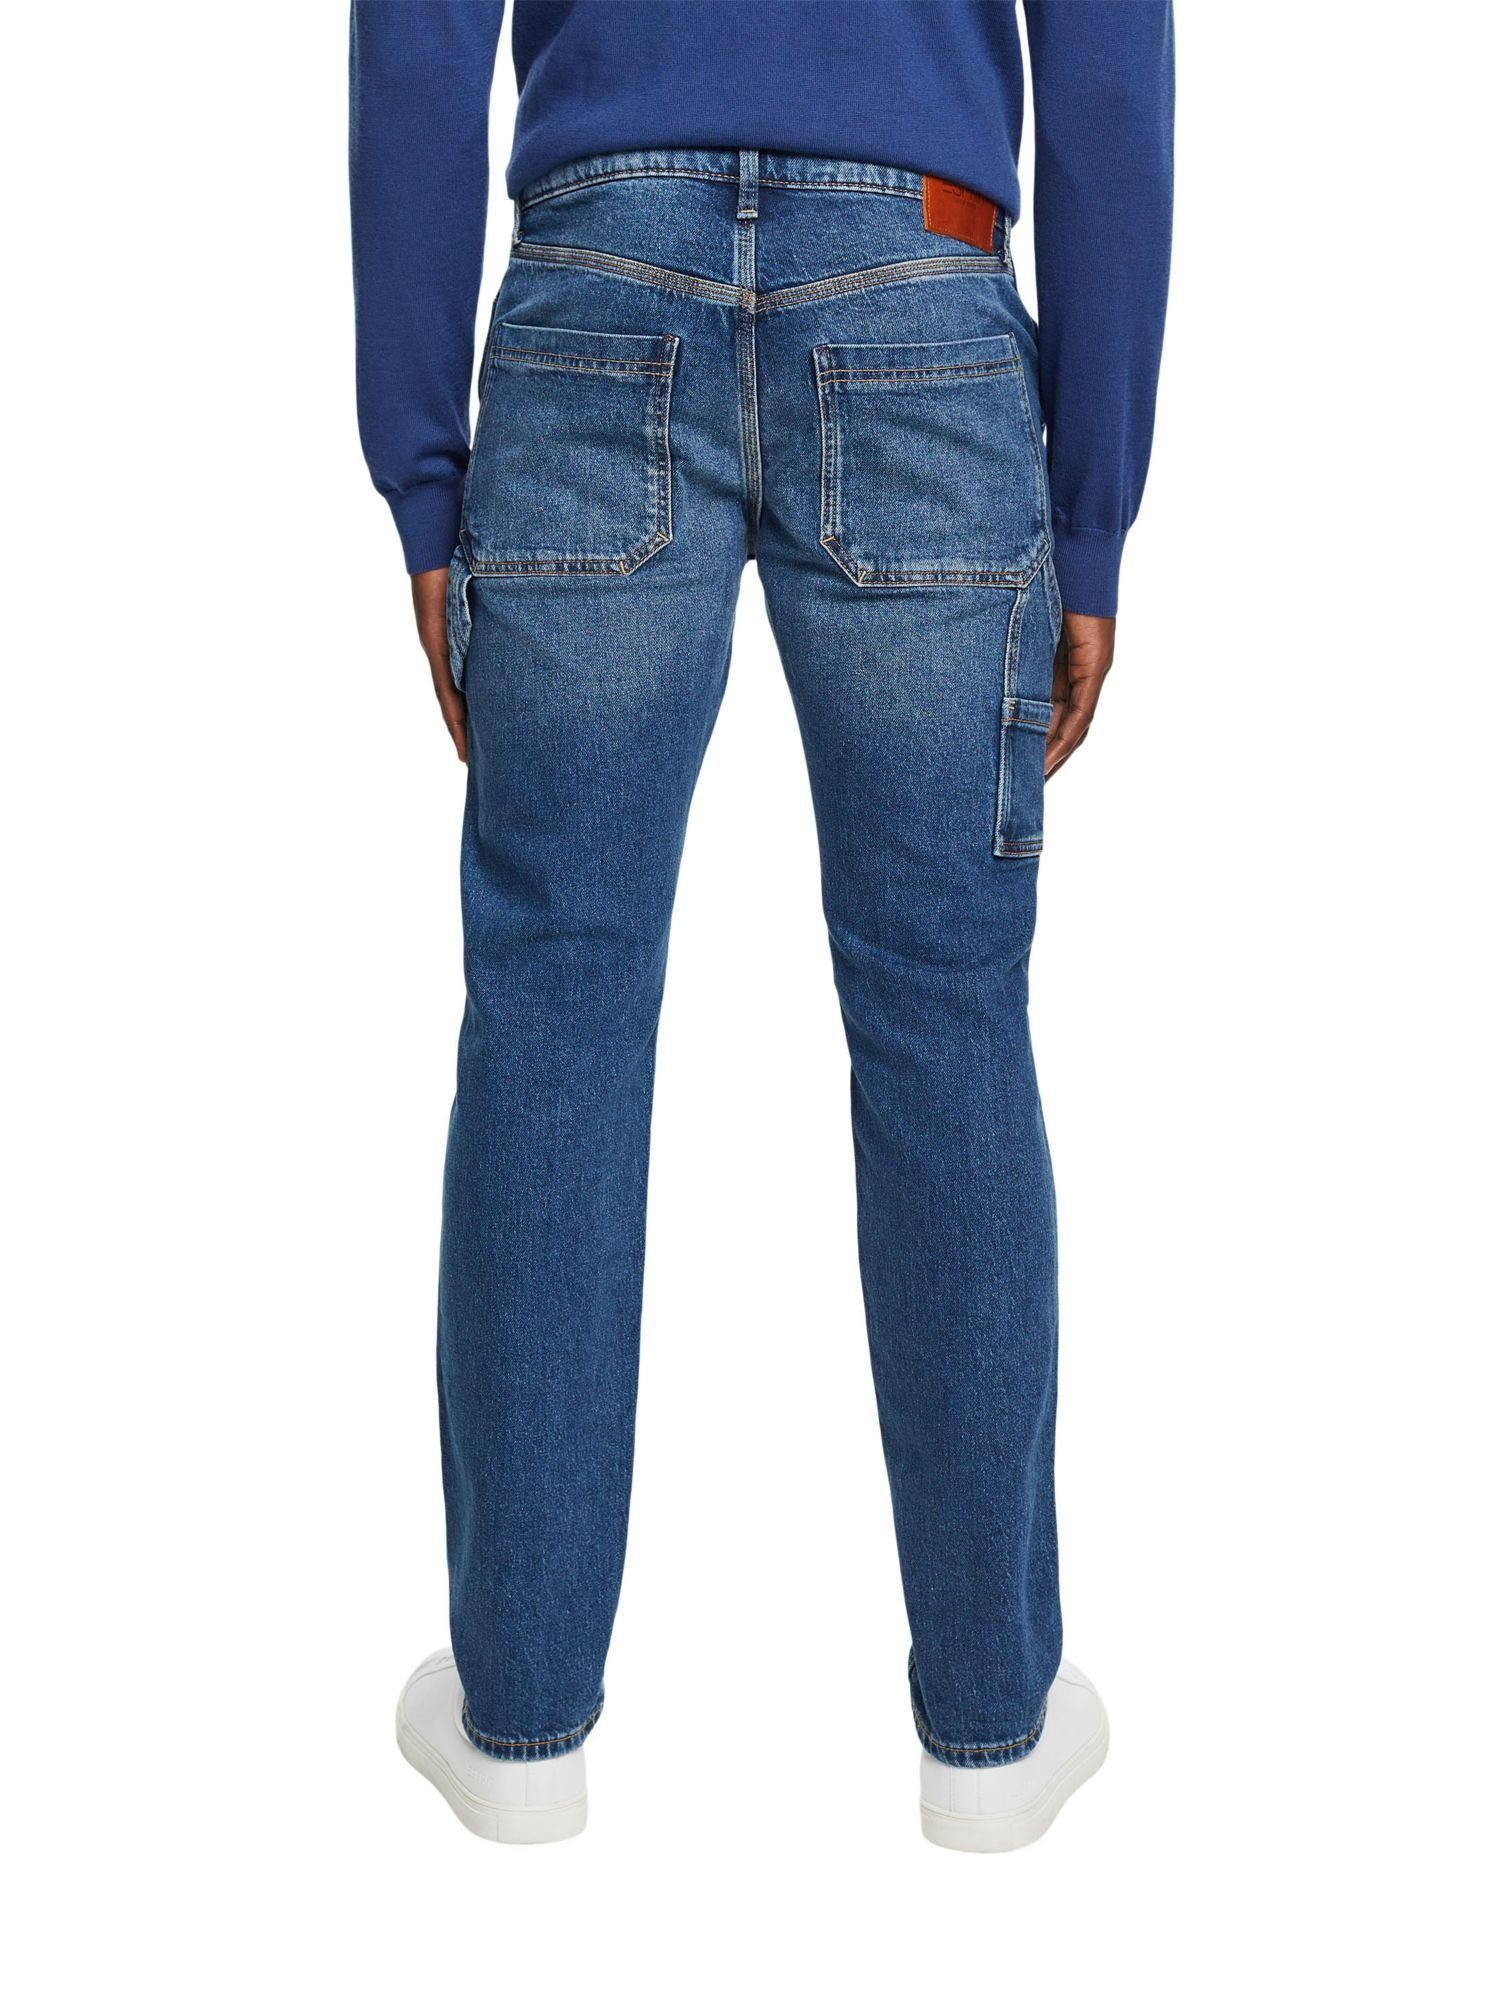 Esprit Straight-Jeans Carpenter-Jeans mit gerader Passform